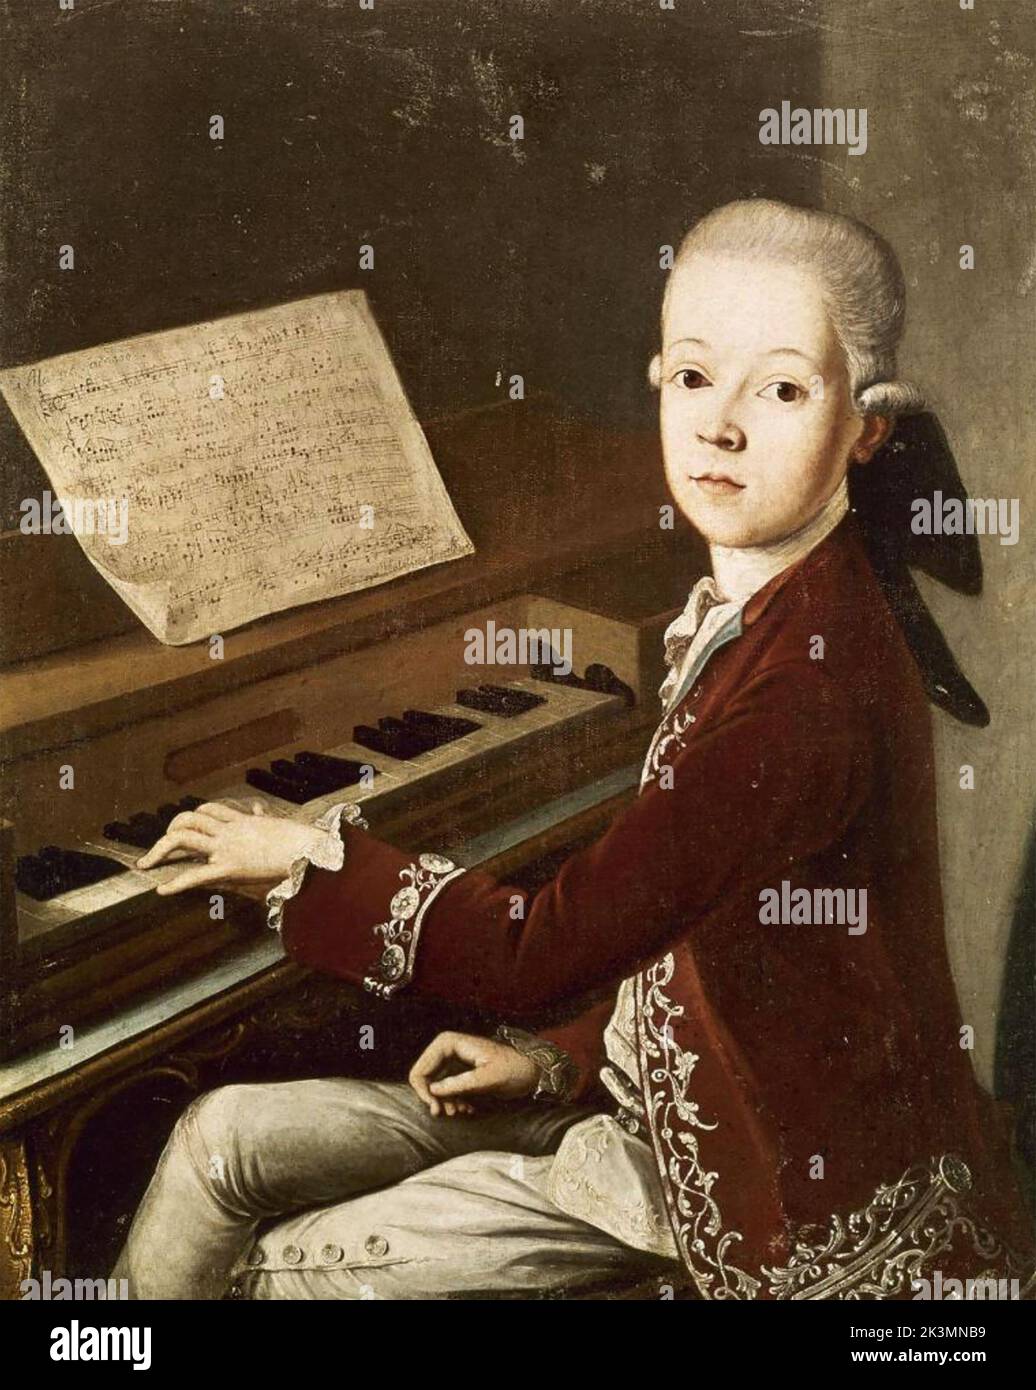 WOLFGANG AMADEUS MOZART (1756-1791) compositeur autrichien jouant le spinet en 1768 Banque D'Images